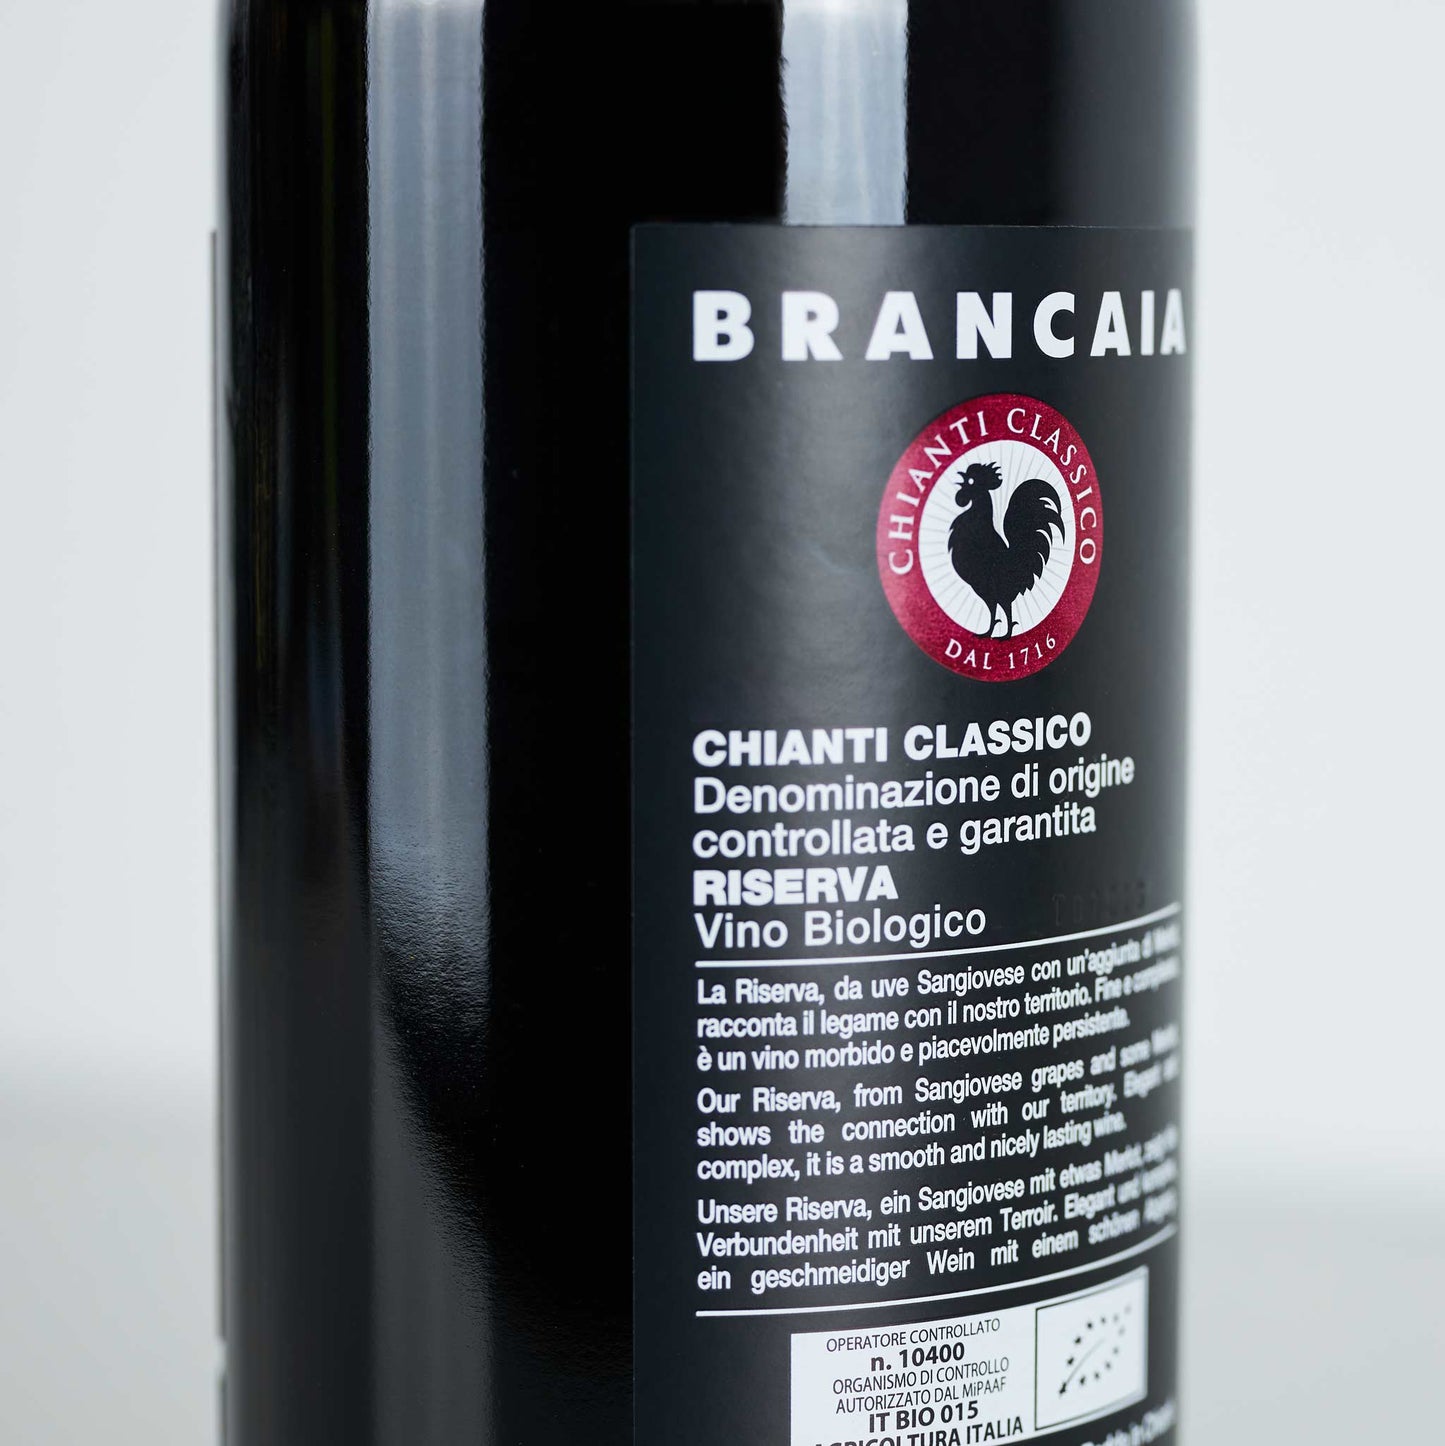 Rotweinflasche stehend, schwarzes Etikett mit der Aufschrift: "Brancaia Chianti Classico""